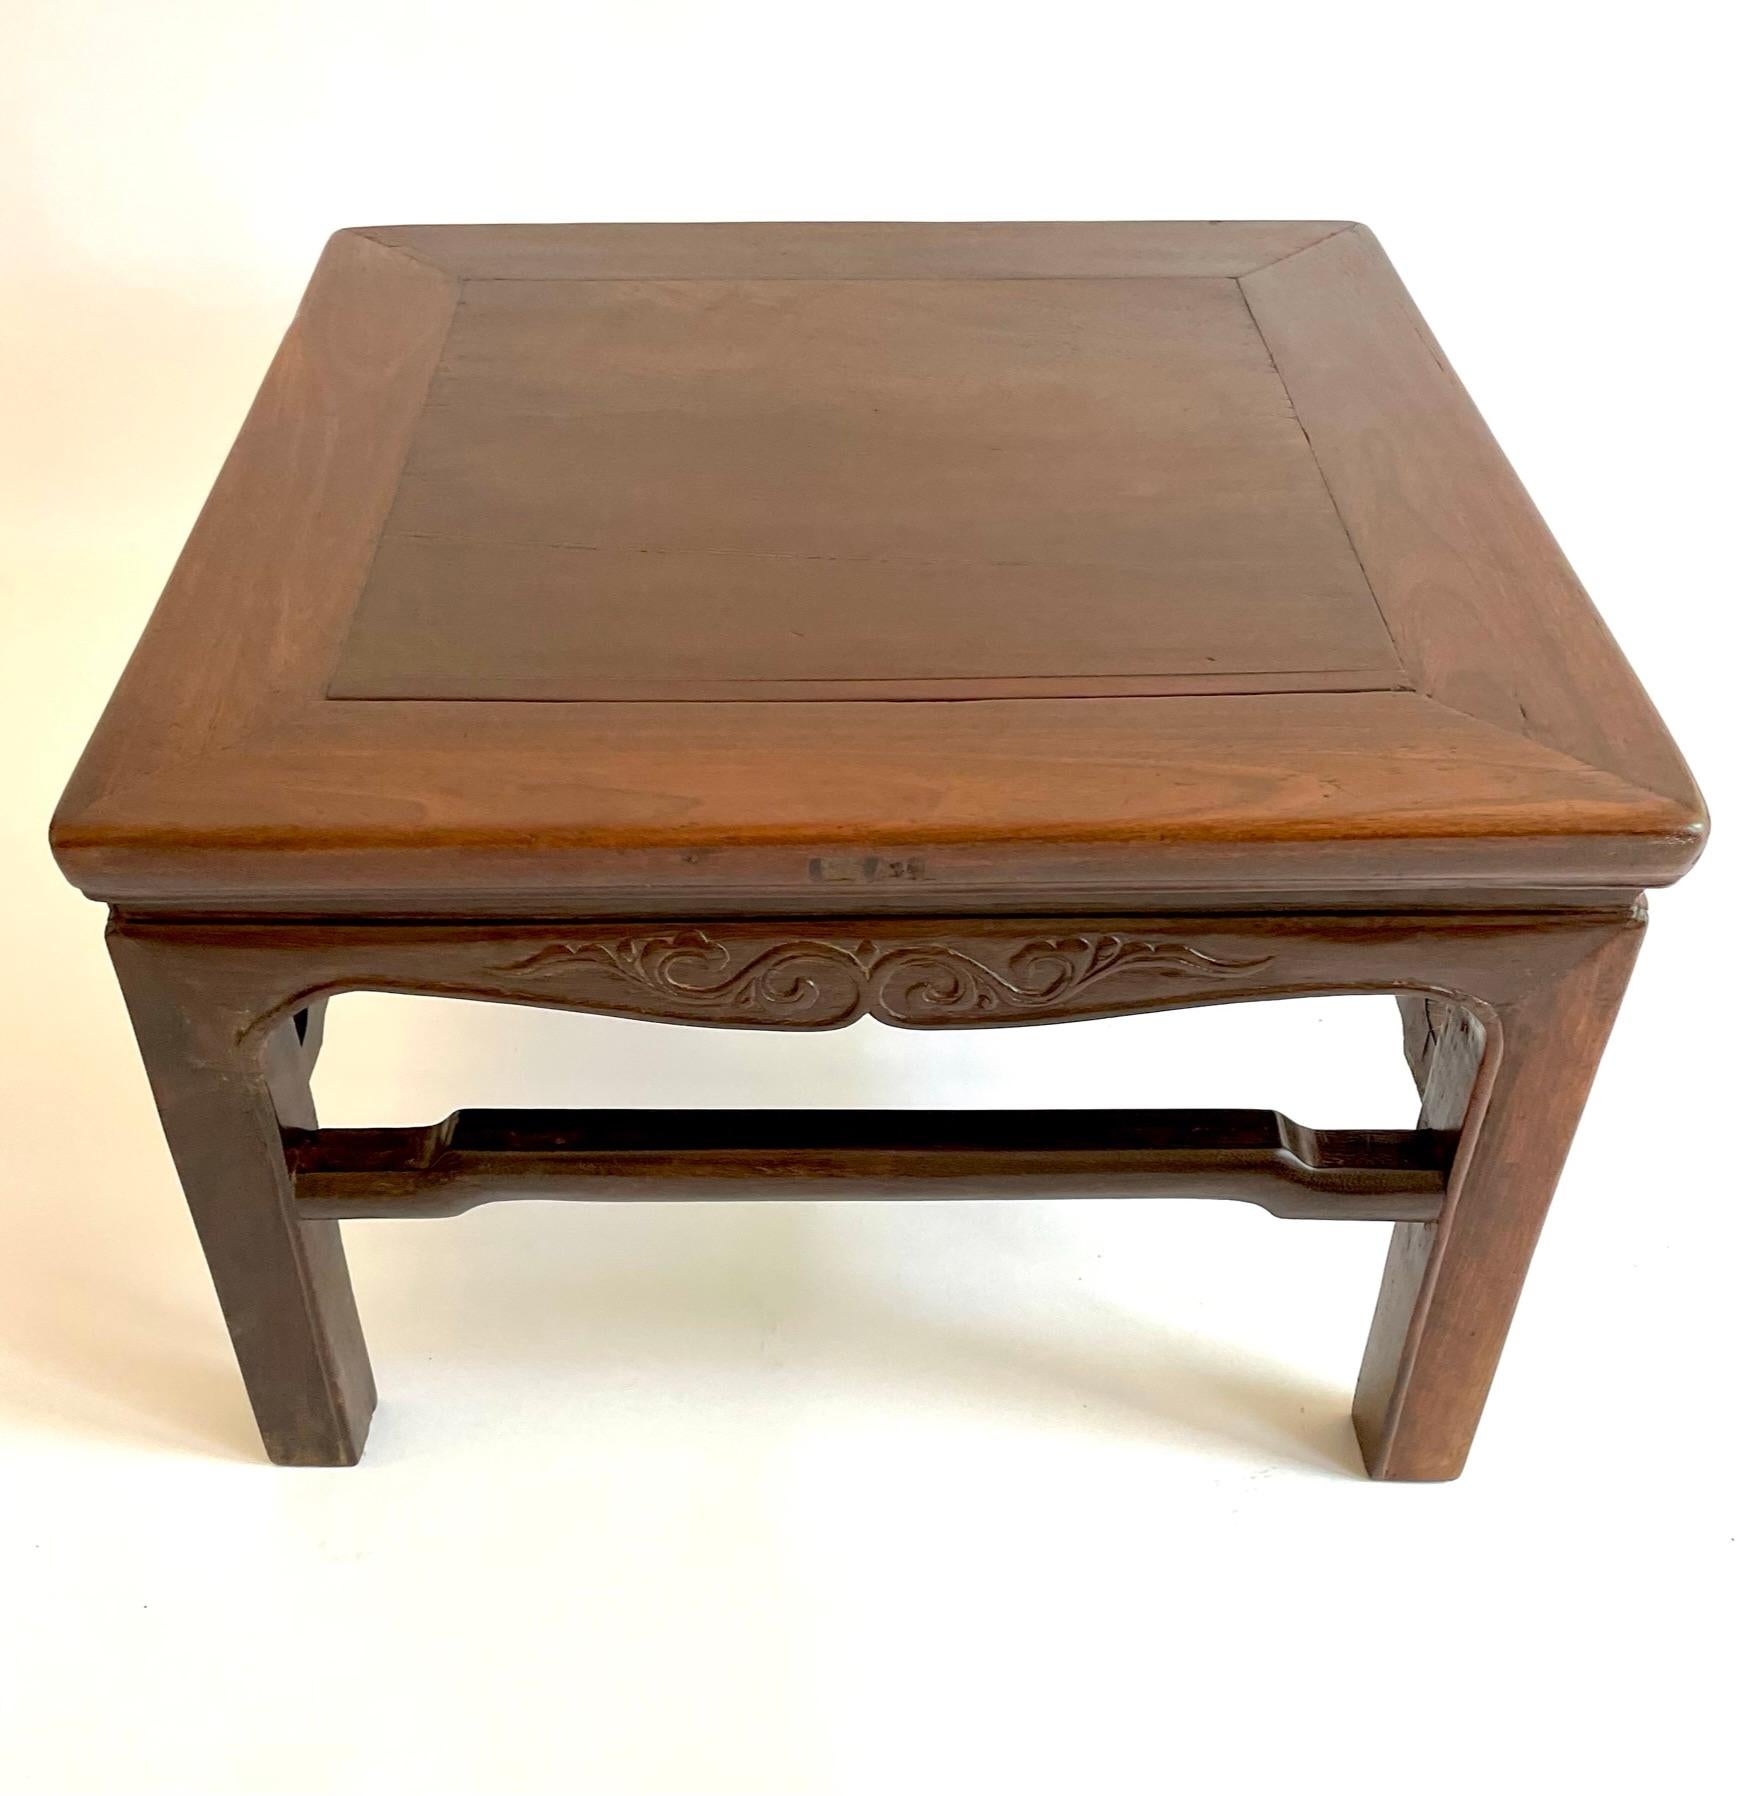 Cette table kang du XIXe siècle est rare en raison du bois dans lequel elle est sculptée, le bois de fer. Le Teilimu, bois de fer chinois, est un bois dur dense à croissance lente, très recherché par les collectionneurs d'antiquités chinoises. Cette